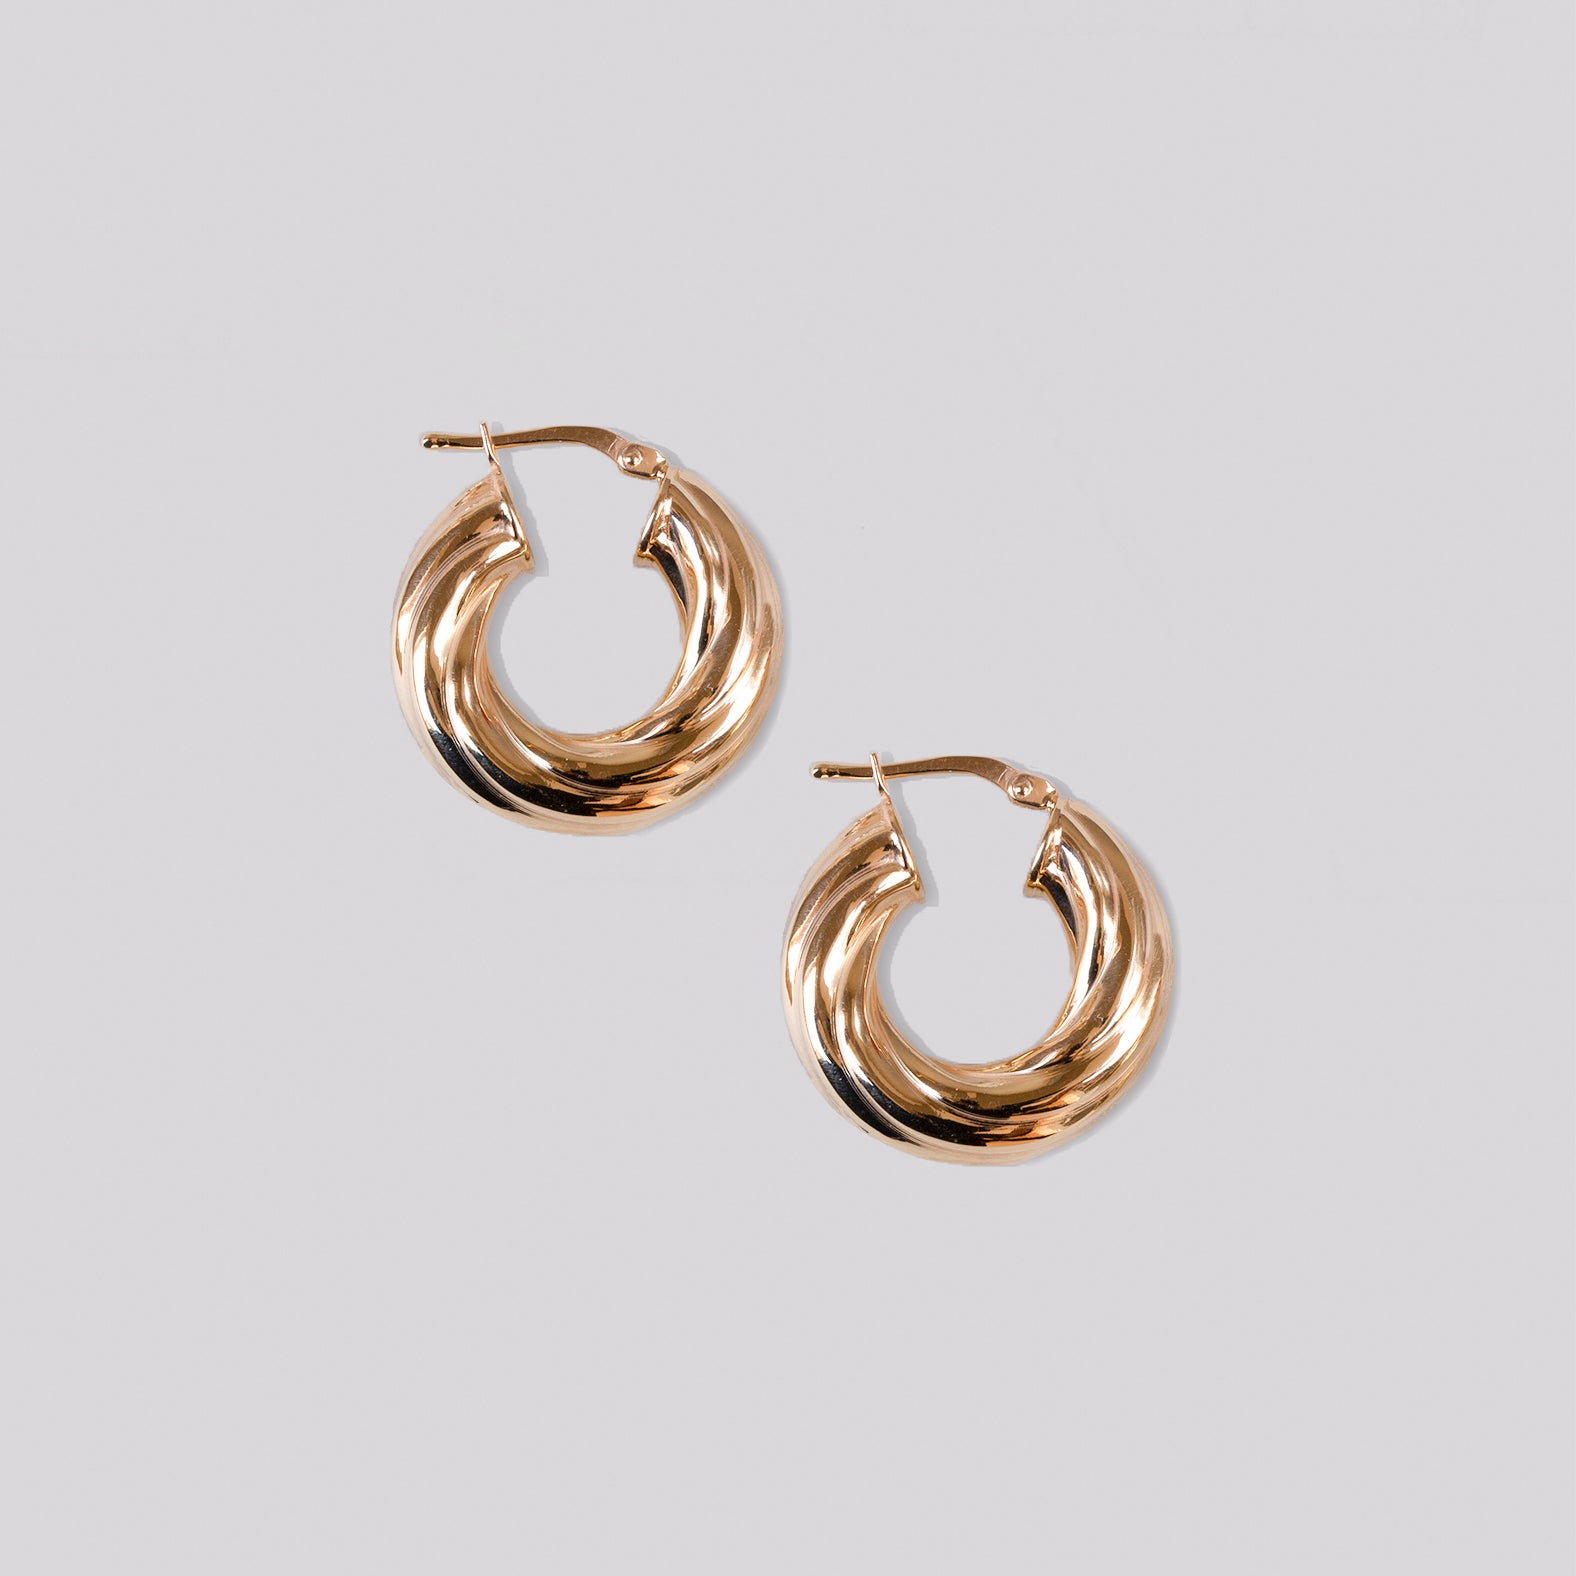 Gold Twisted Hoop Earrings - Large